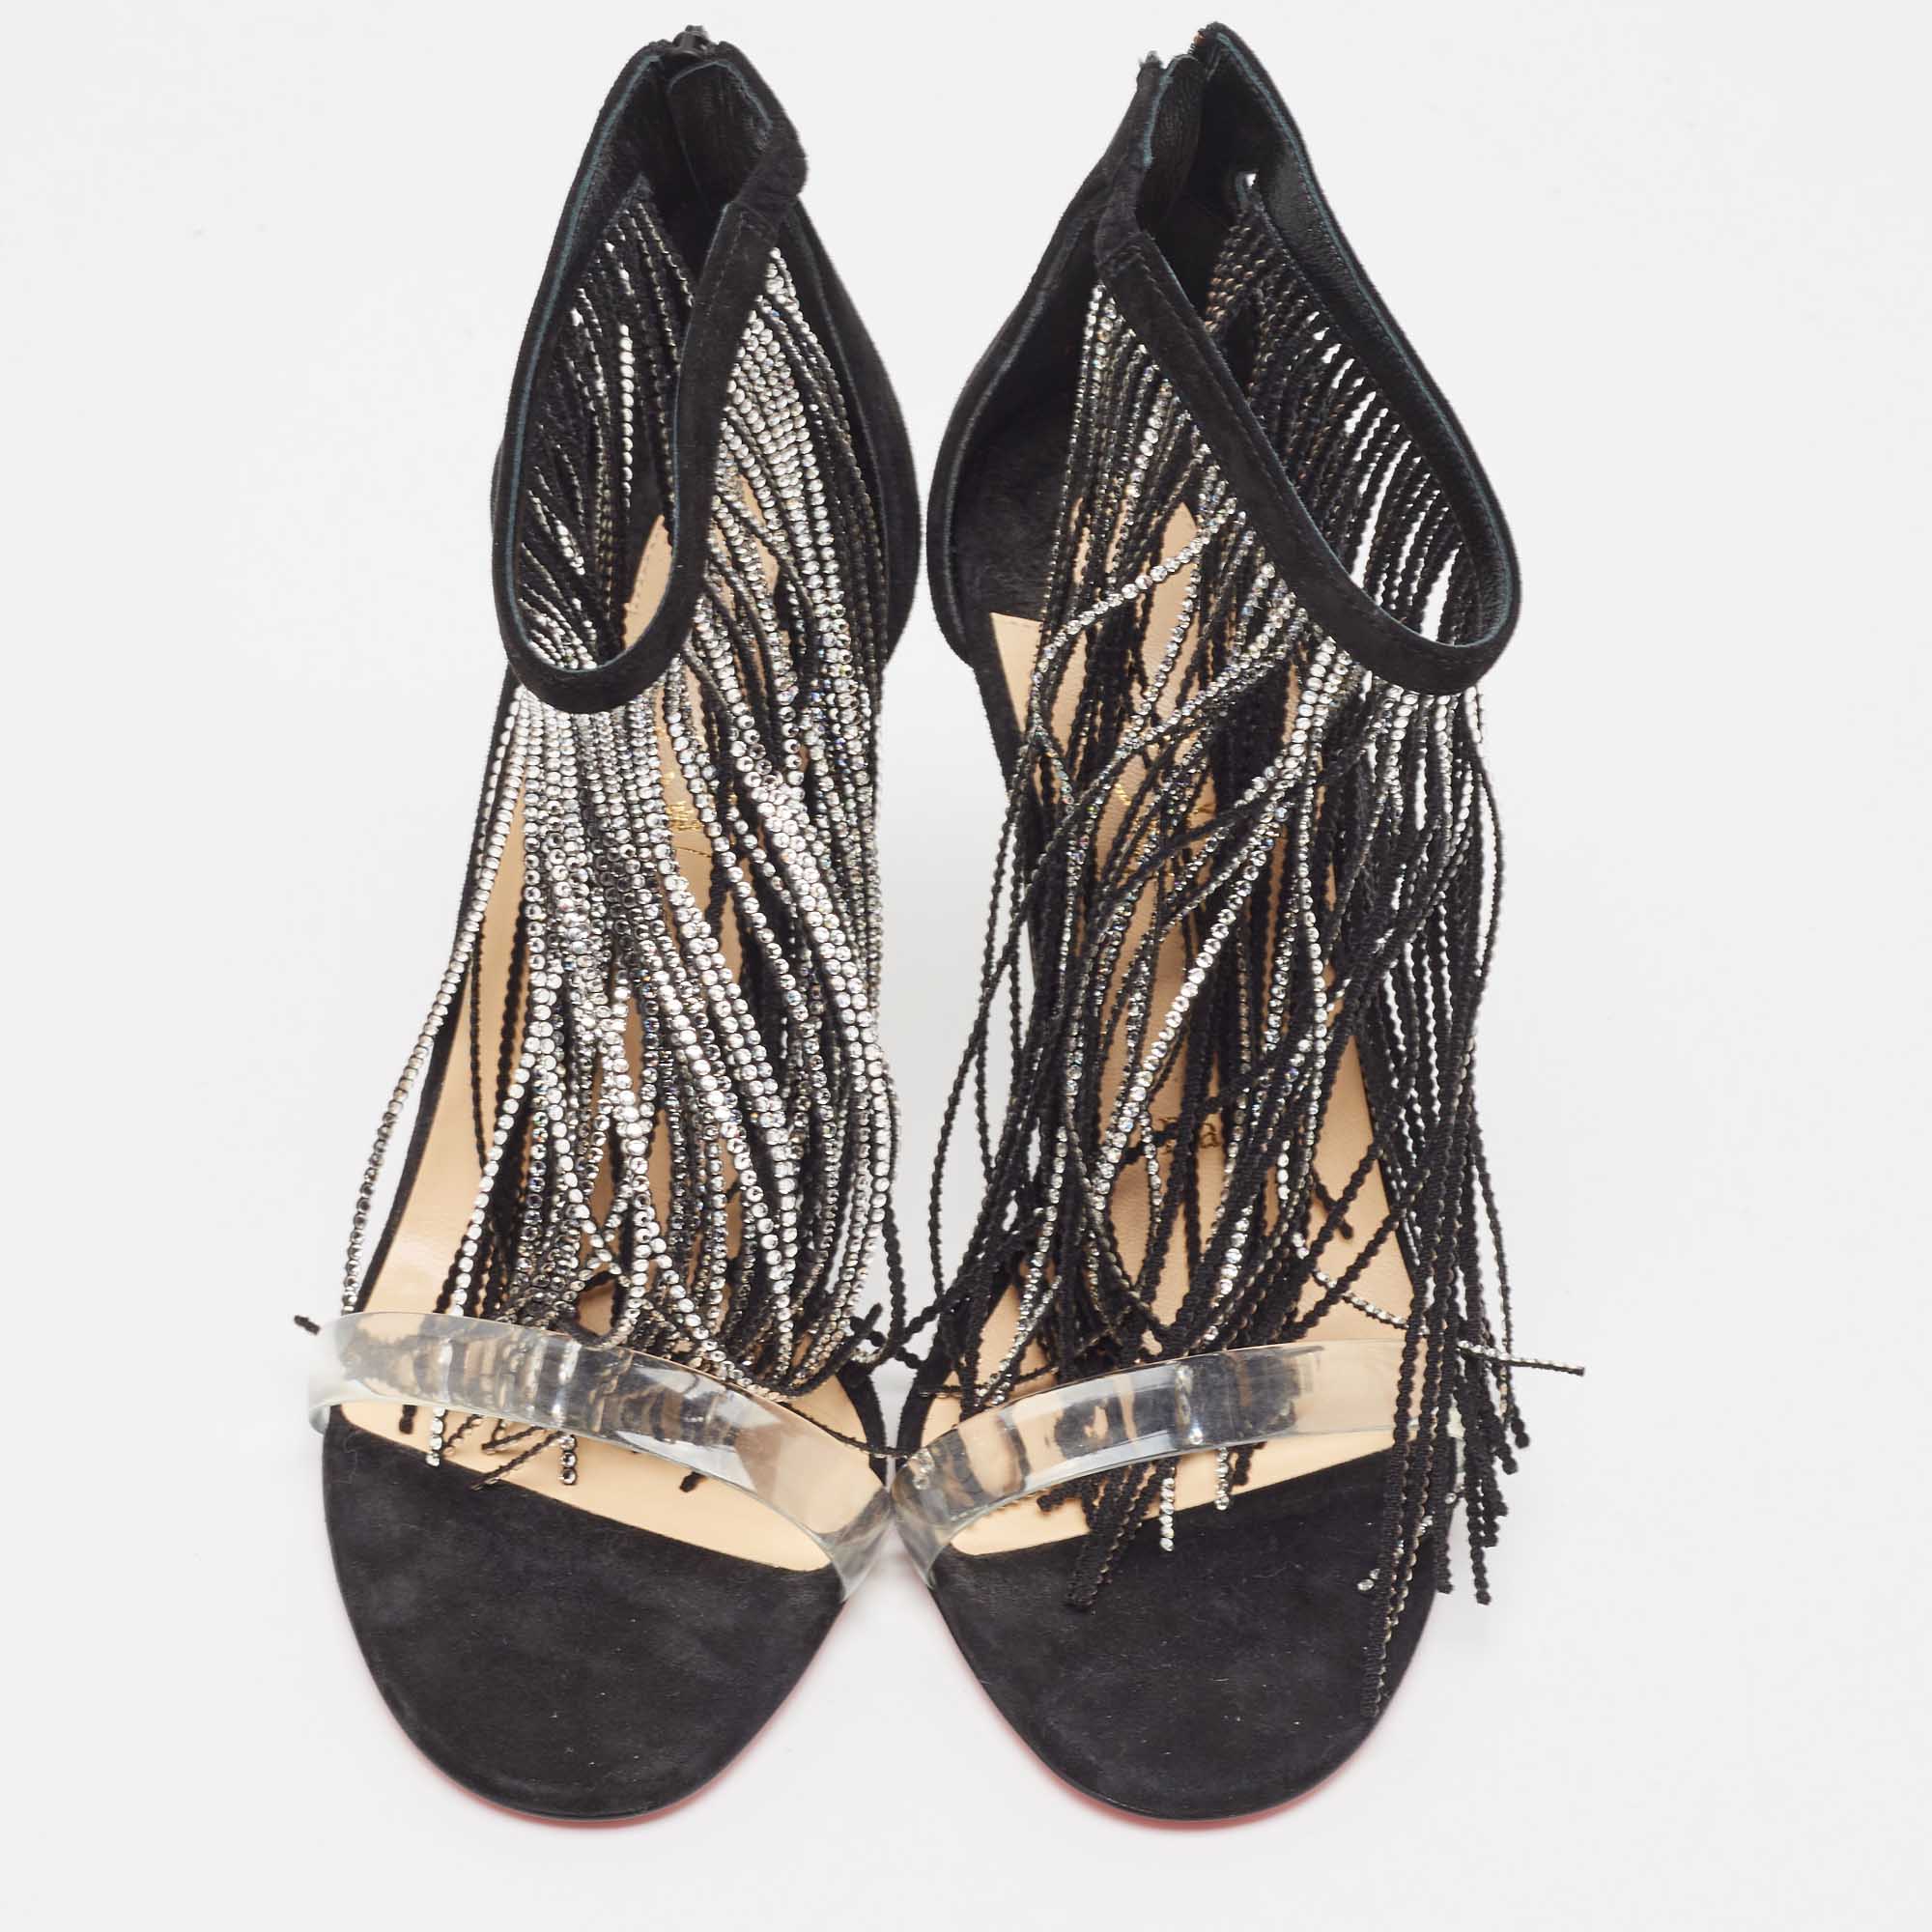 Christian Louboutin Black Suede Crystal Embellished Fringe Ankle Strap Sandals Size 36